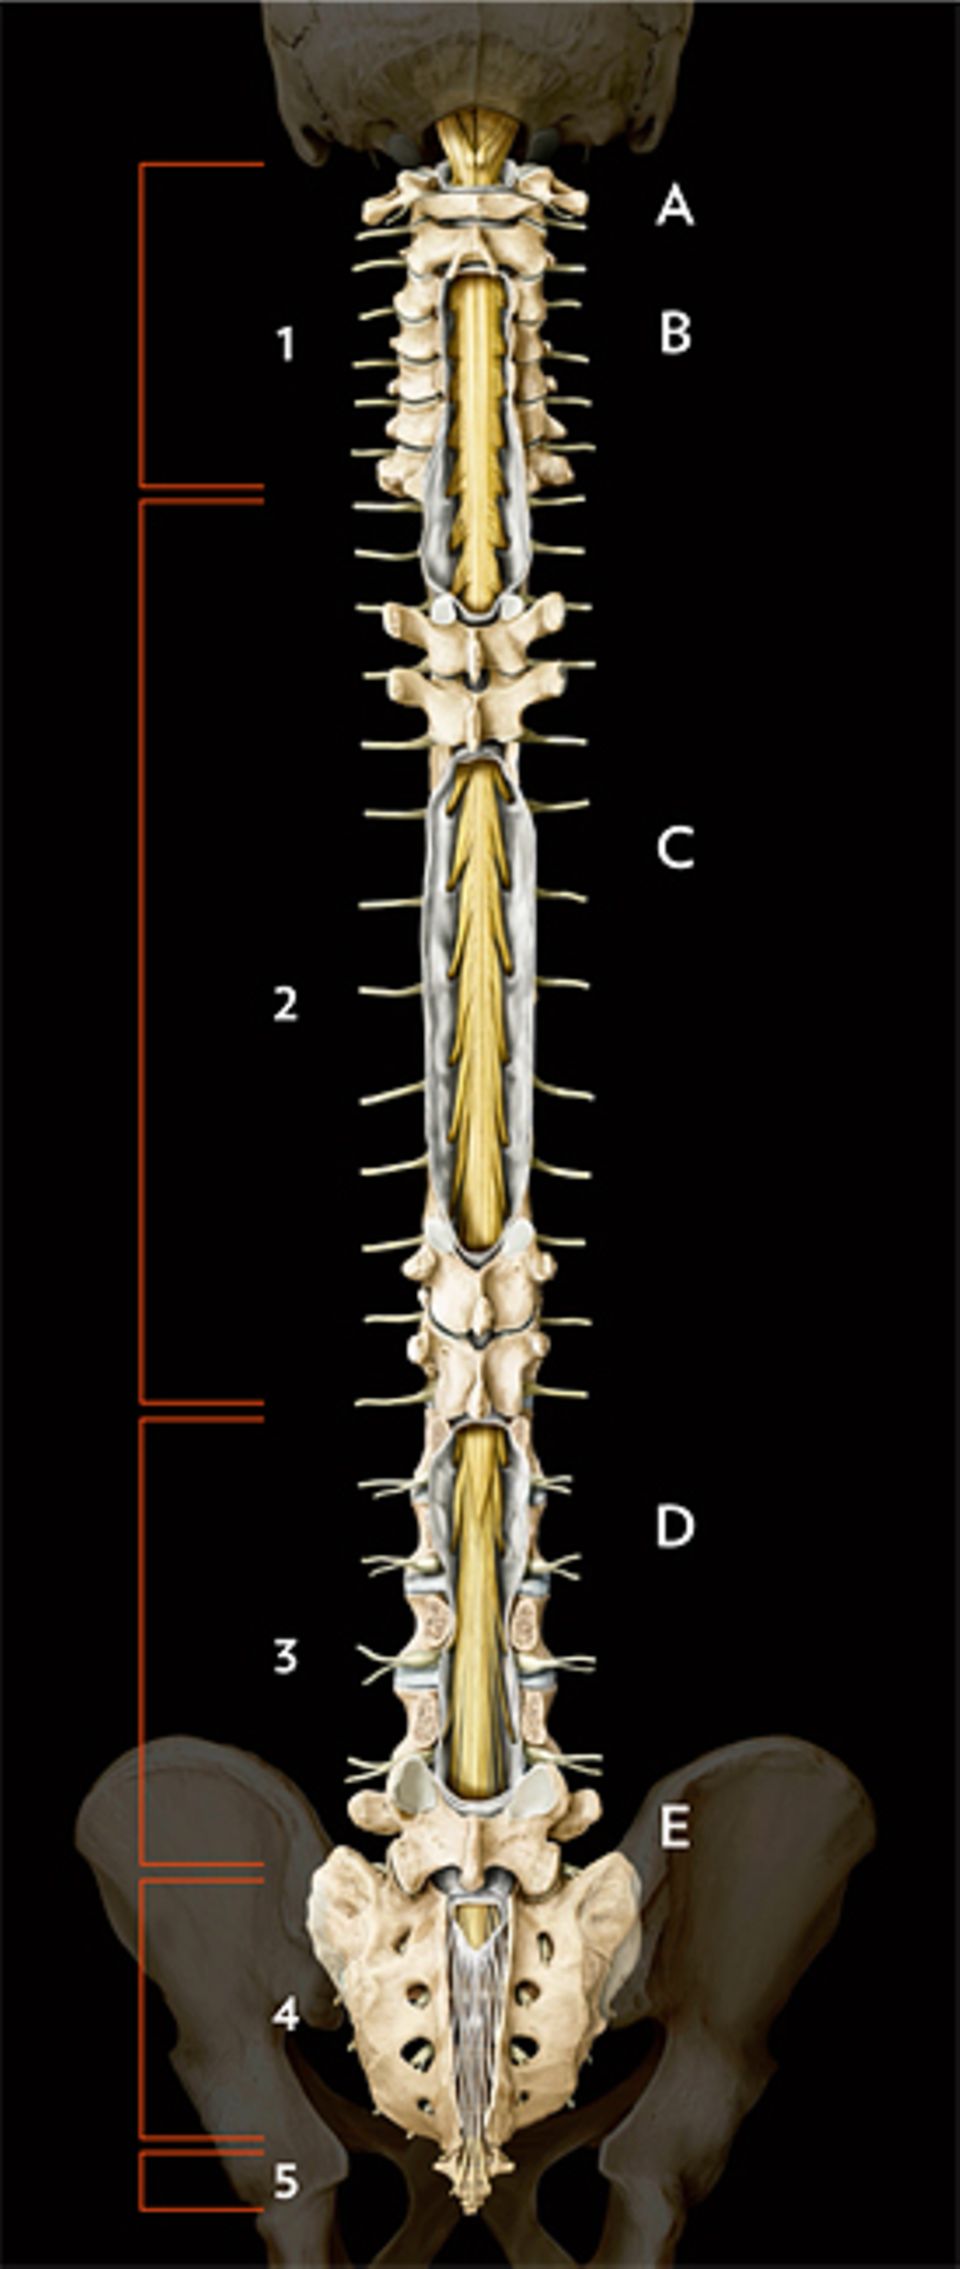 Wirbelsäule: Die sieben Wirbel der Halswirbelsäule (1) verbinden Rumpf und Kopf – ganz oben tritt das Rückenmark (gelb) in den Spinalkanal ein. Die Brustwirbelsäule (2) besteht aus zwölf Wirbeln: Wie auch am Hals zweigen hier zwischen den Wirbeln feine Nerven (gelb) ab. Fünf Wirbel bilden die Lendenwirbelsäule (3); auf der Höhe des ersten endet meist das Rückenmark. Von dort läuft nur noch ein Bündel von Nervenwurzeln im Spinalkanal abwärts. Zur Wirbelsäule gehören auch Kreuzbein (4) und Steißbein (5)